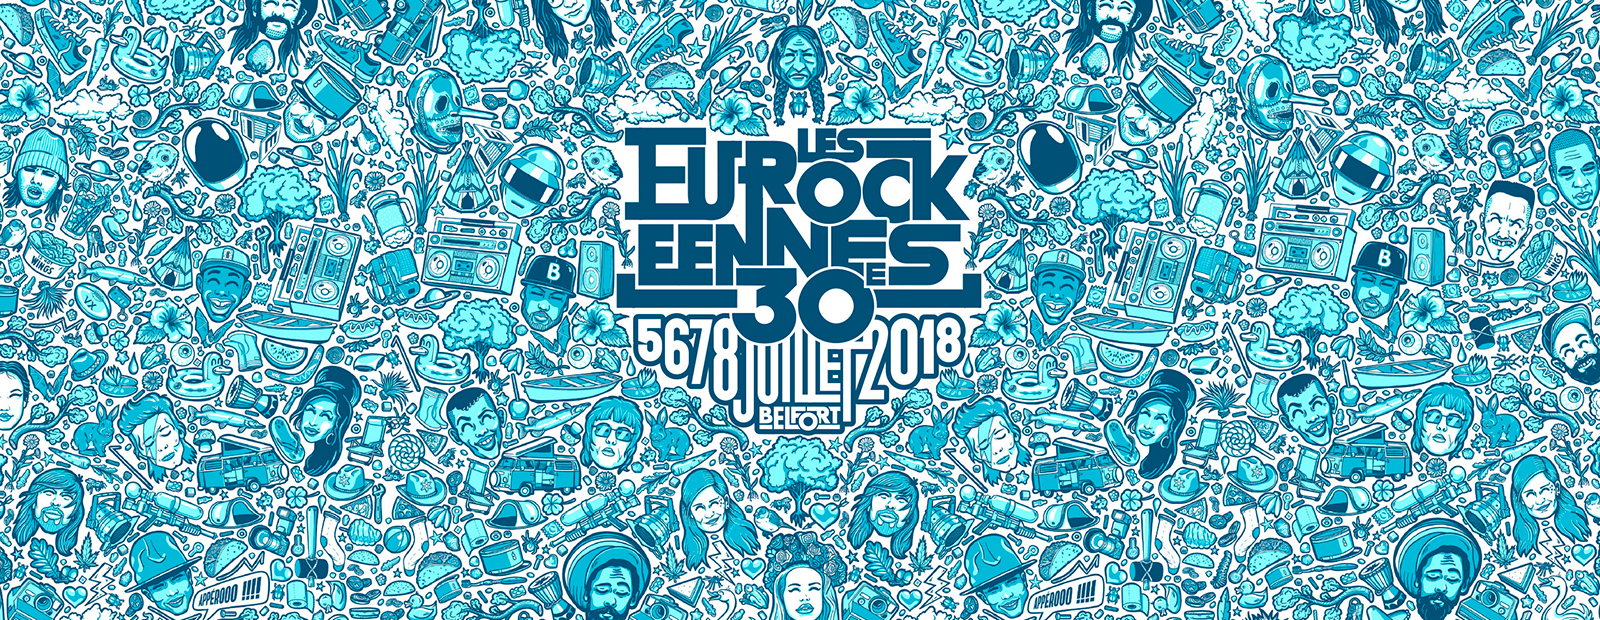 Eurockéennes de Belfort 2018